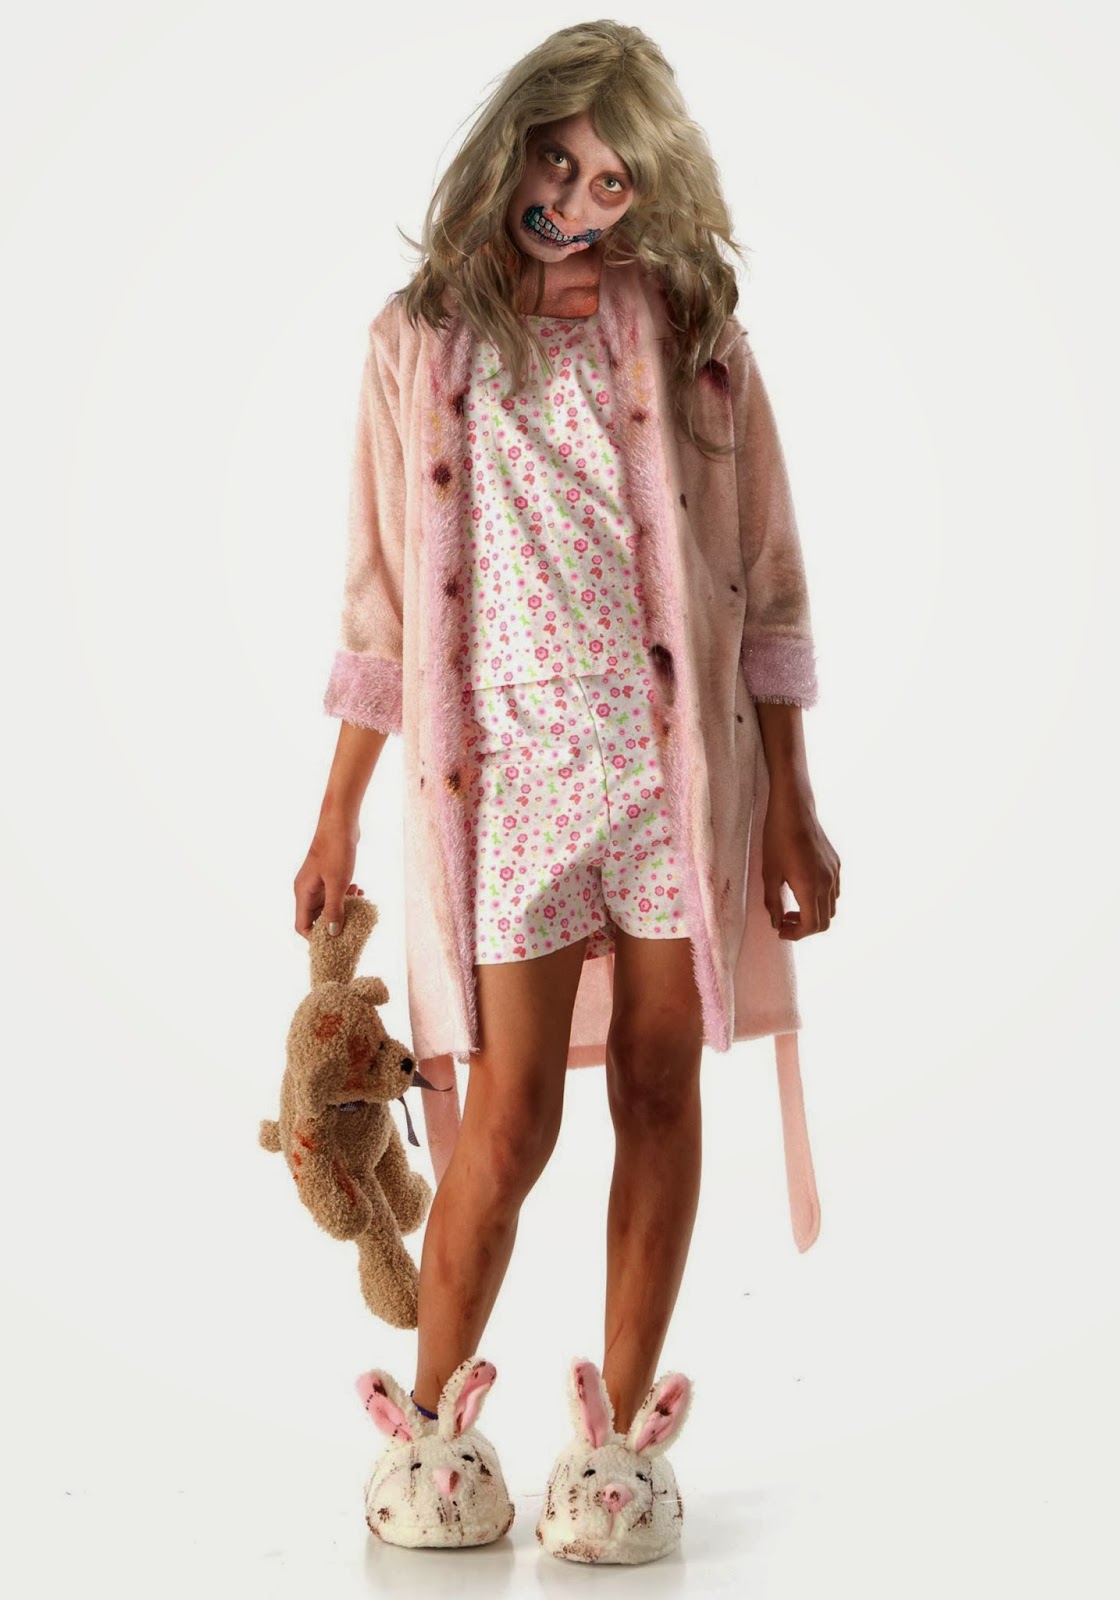 Walking Dead Zombie Girl Costume